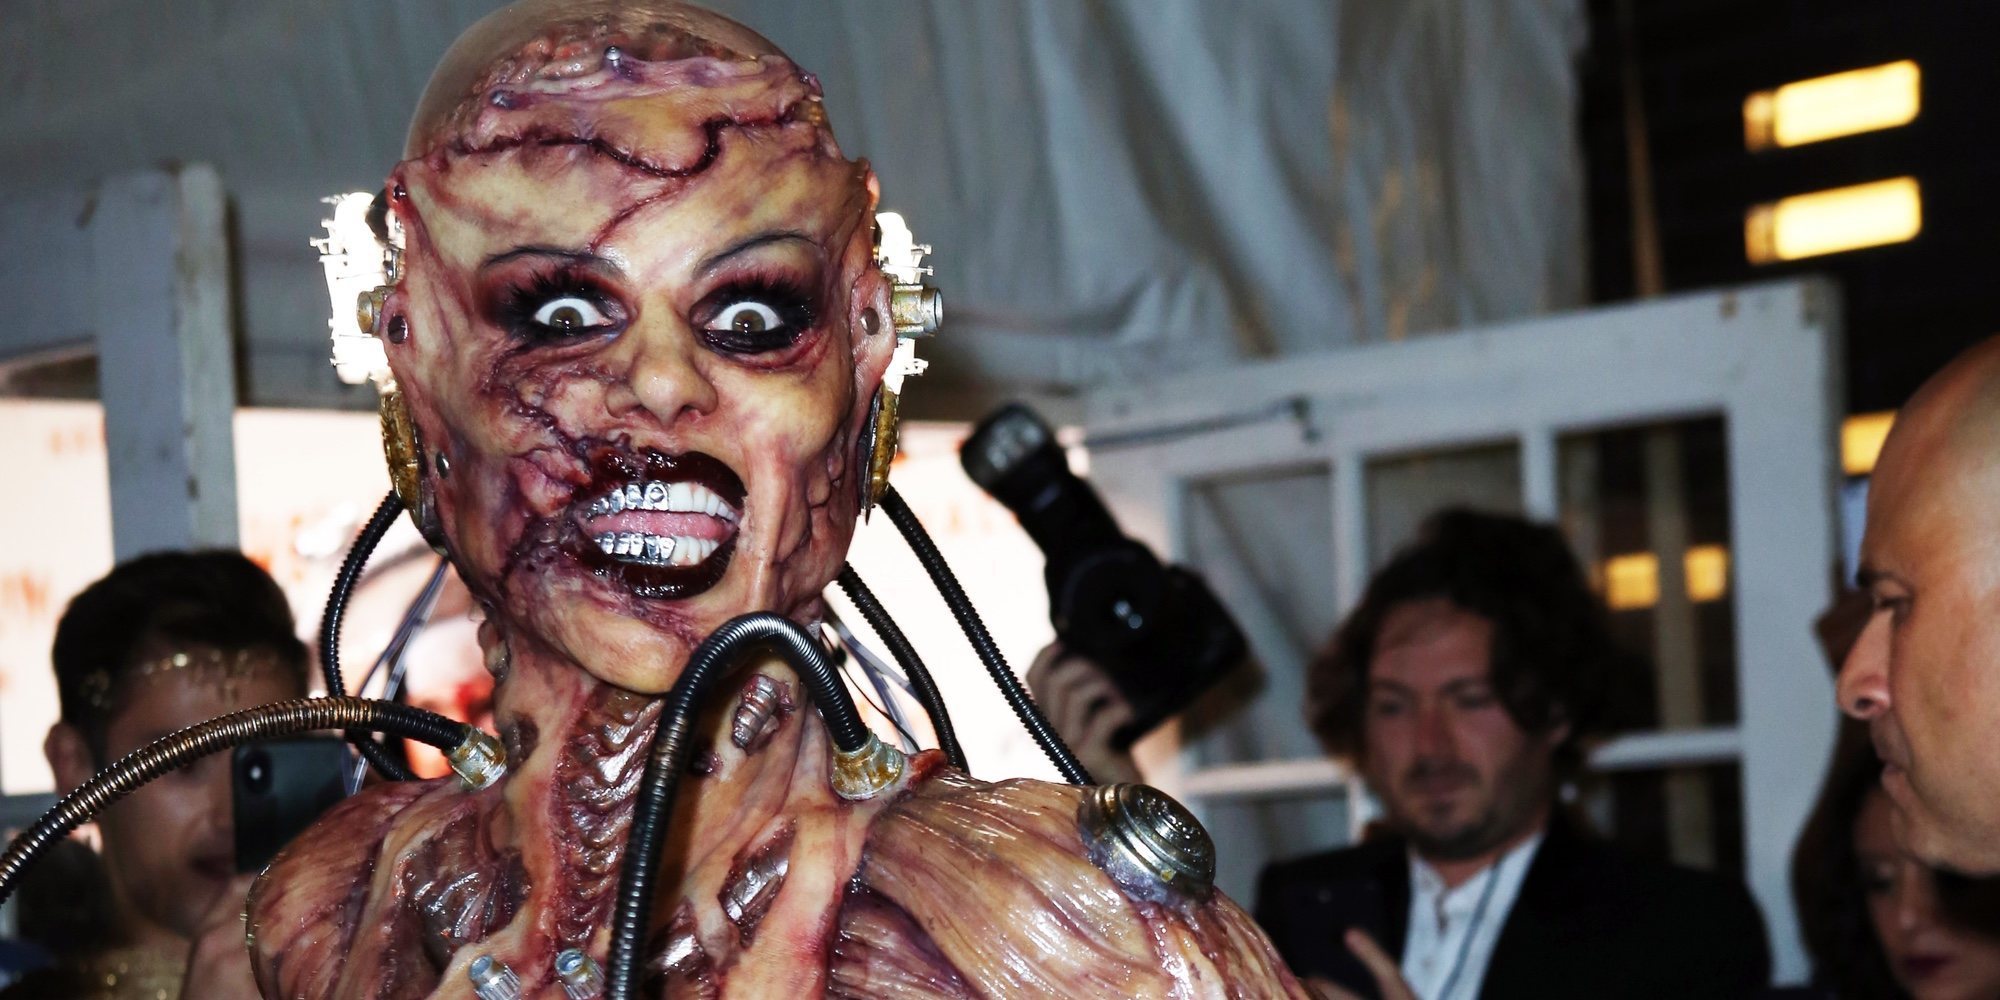 Heidi Klum apuesta por un espeluznante disfraz de alienígena para Halloween 2019